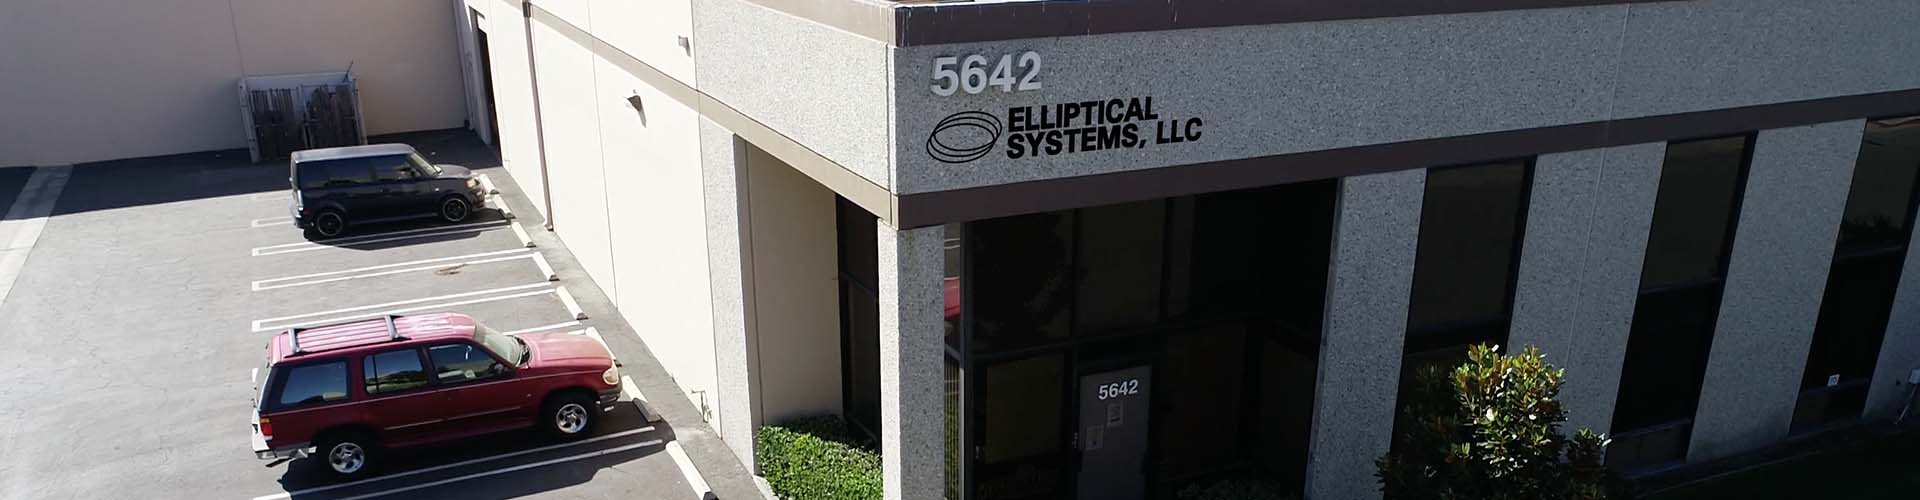 Elliptical Systems, LLC